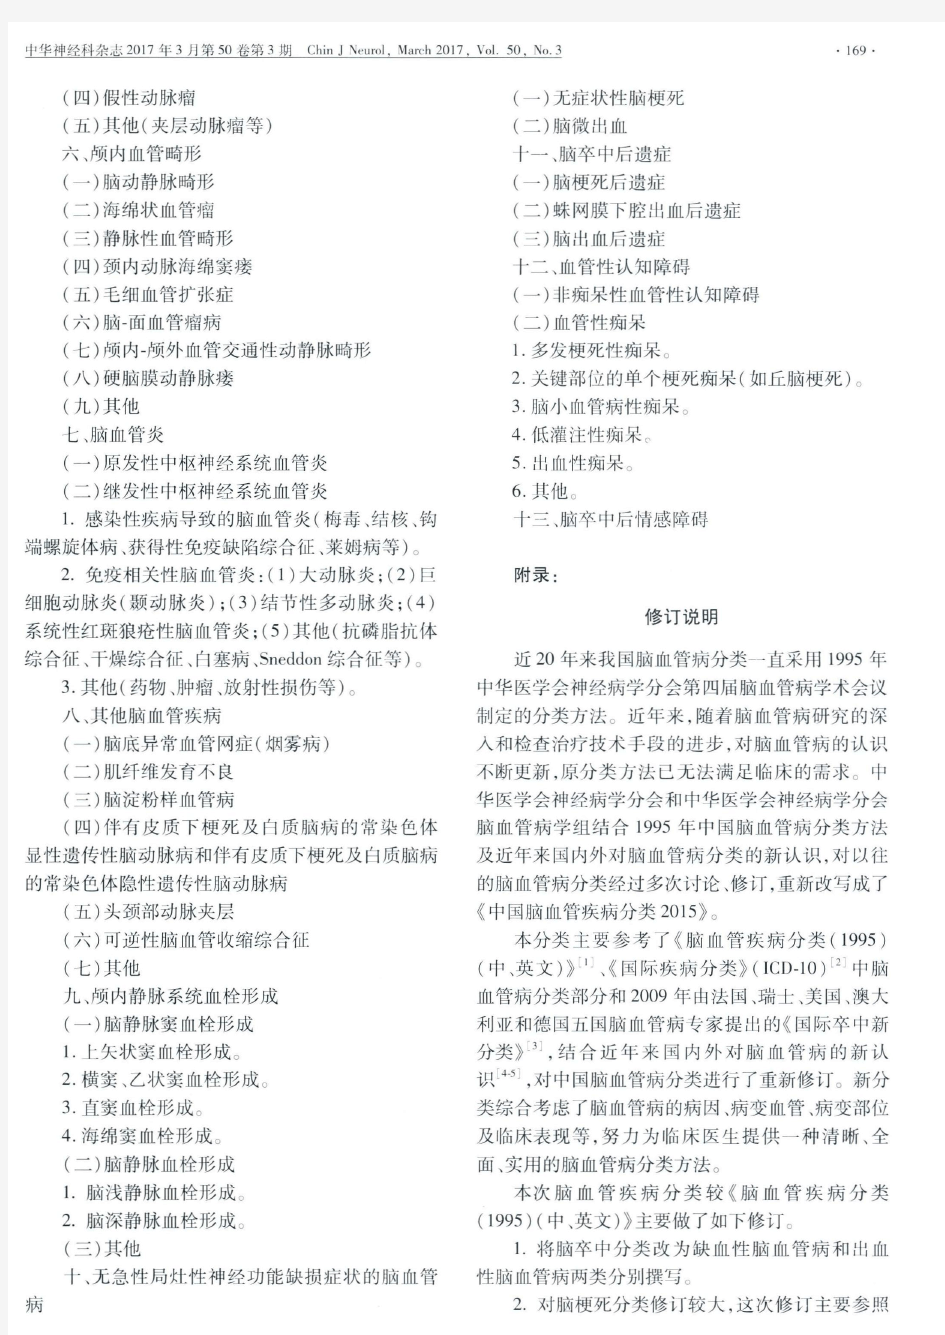 中国脑血管疾病分类2015